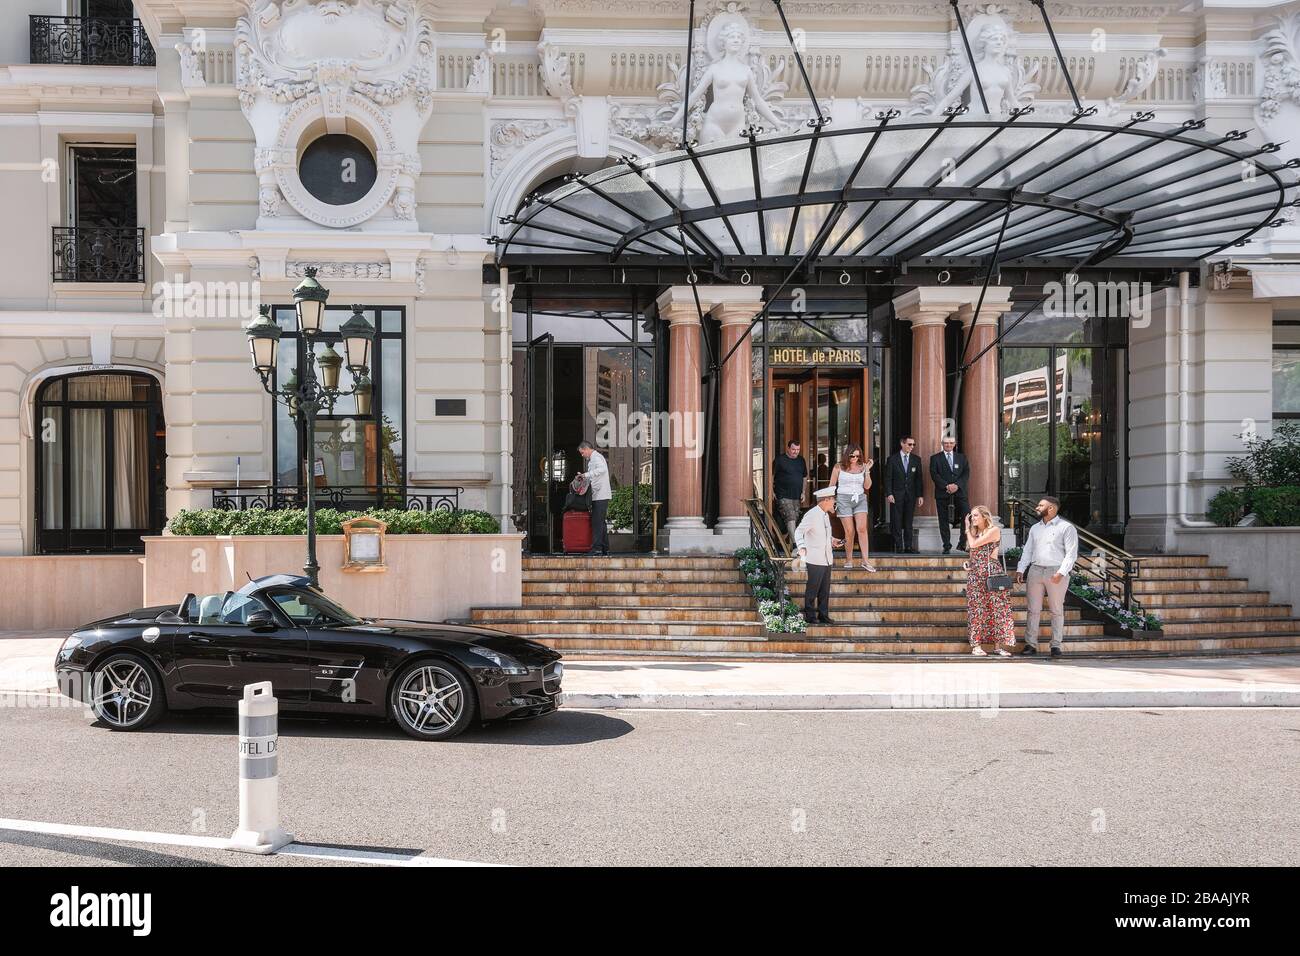 Mónaco, 14 de septiembre de 2018: La entrada al Hotel de Paris con su característico dosel de cristal en Mónaco Foto de stock